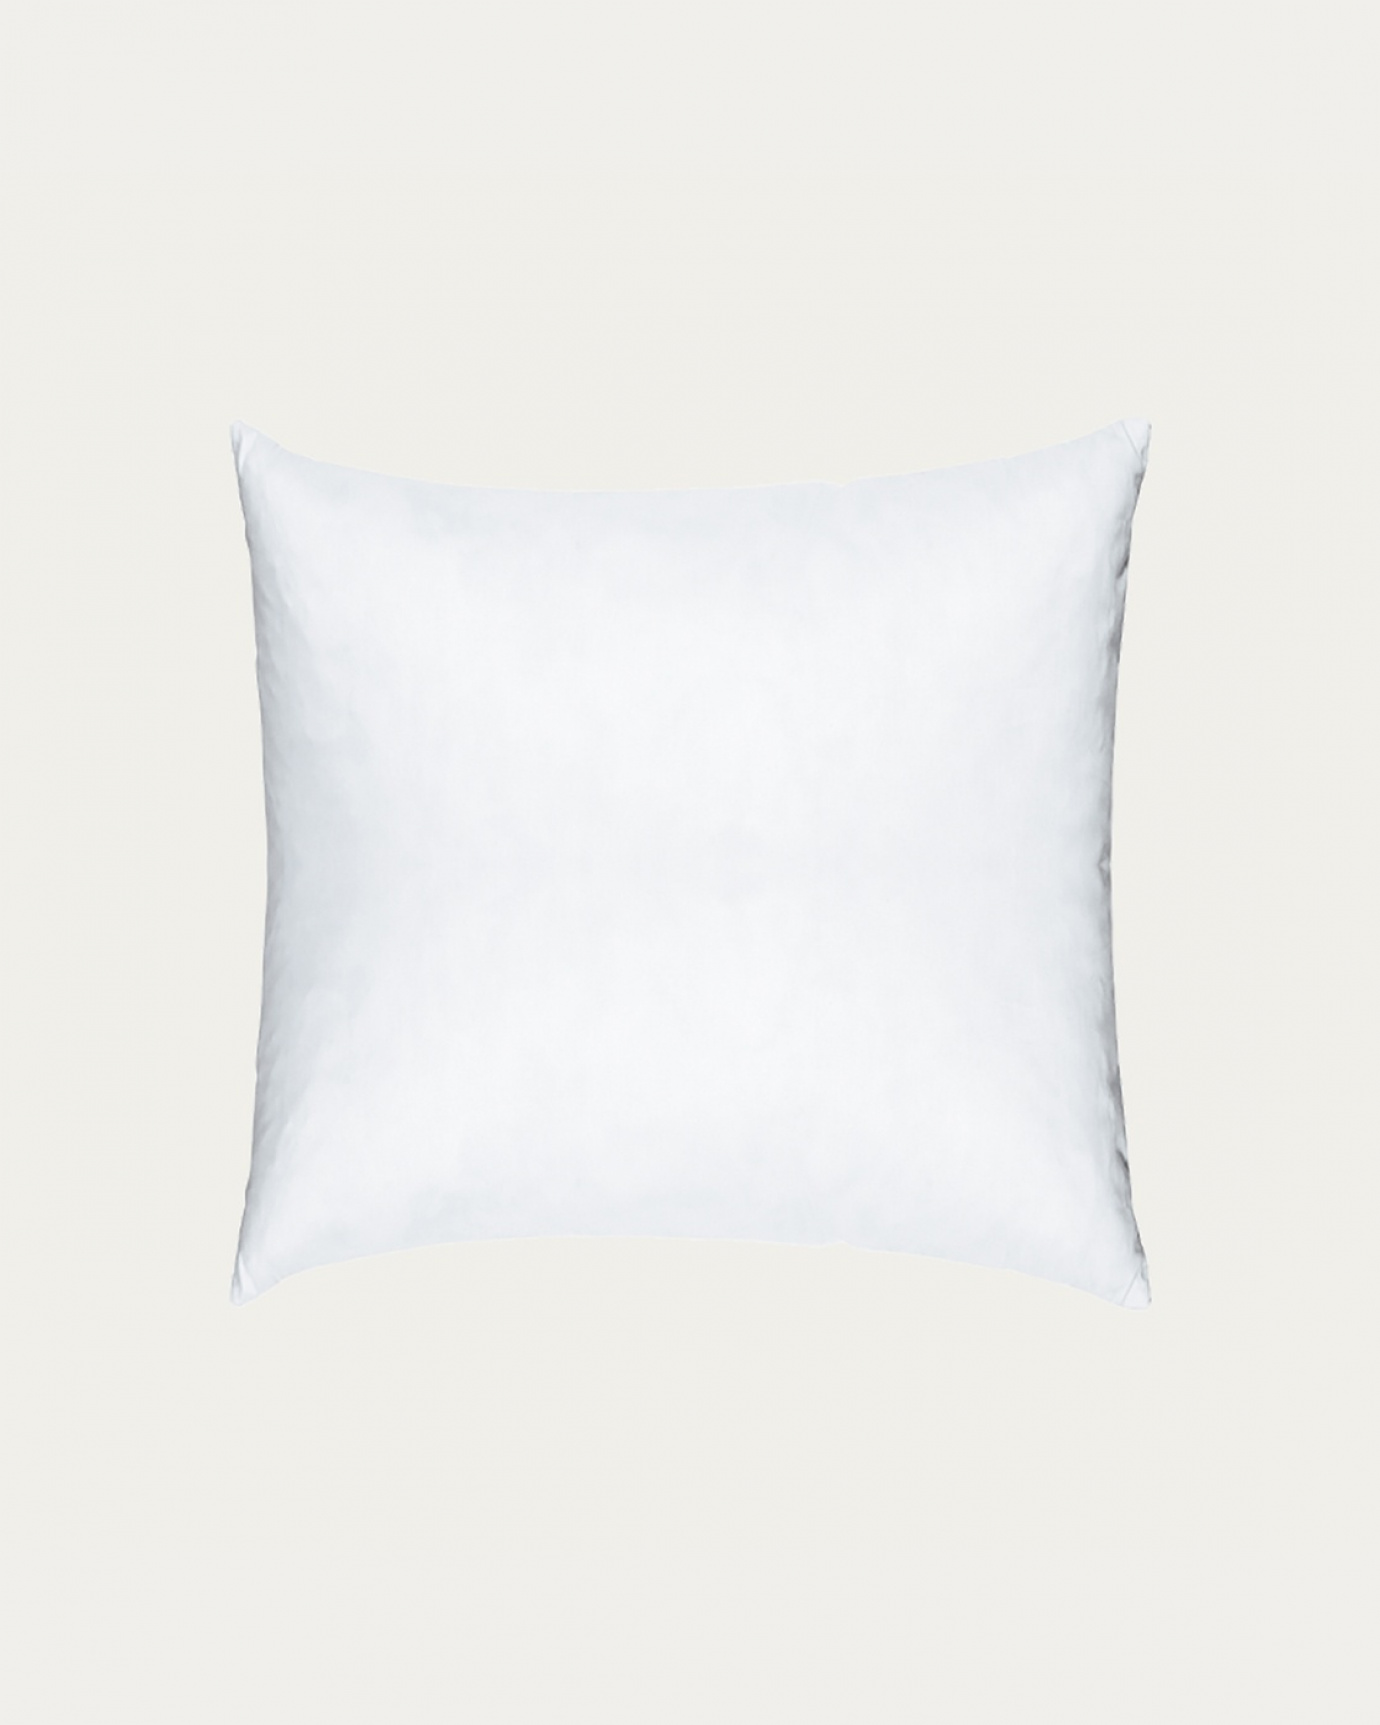 Immagine prodotto bianco FEATHER cuscini interni in cotone con imbottitura in piuma di LINUM DESIGN. Dimensioni 40x40 cm.